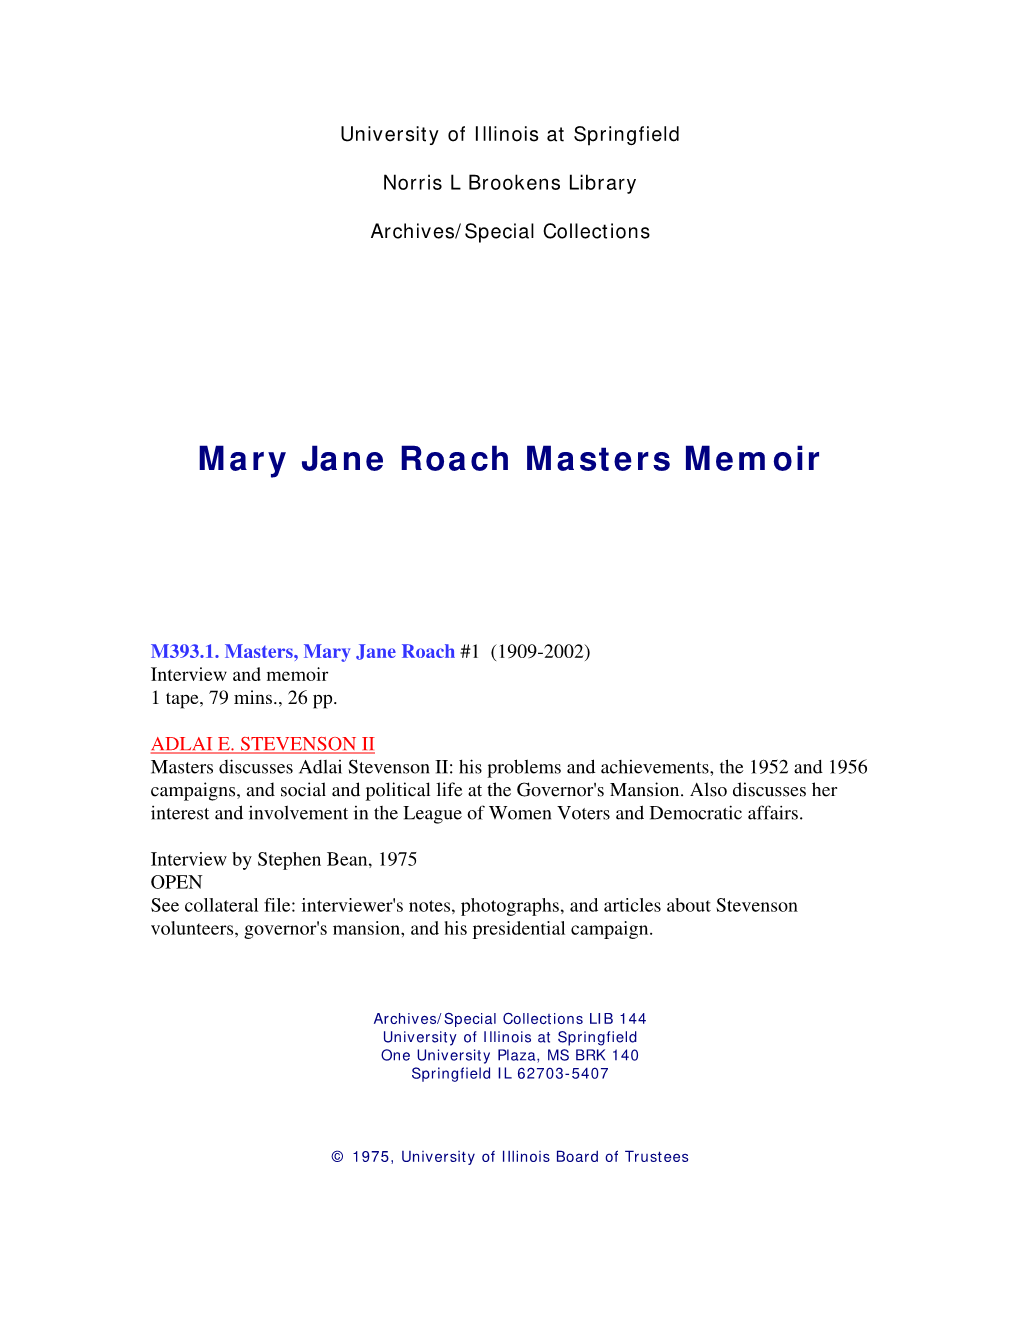 Mary Jane Roach Masters Memoir